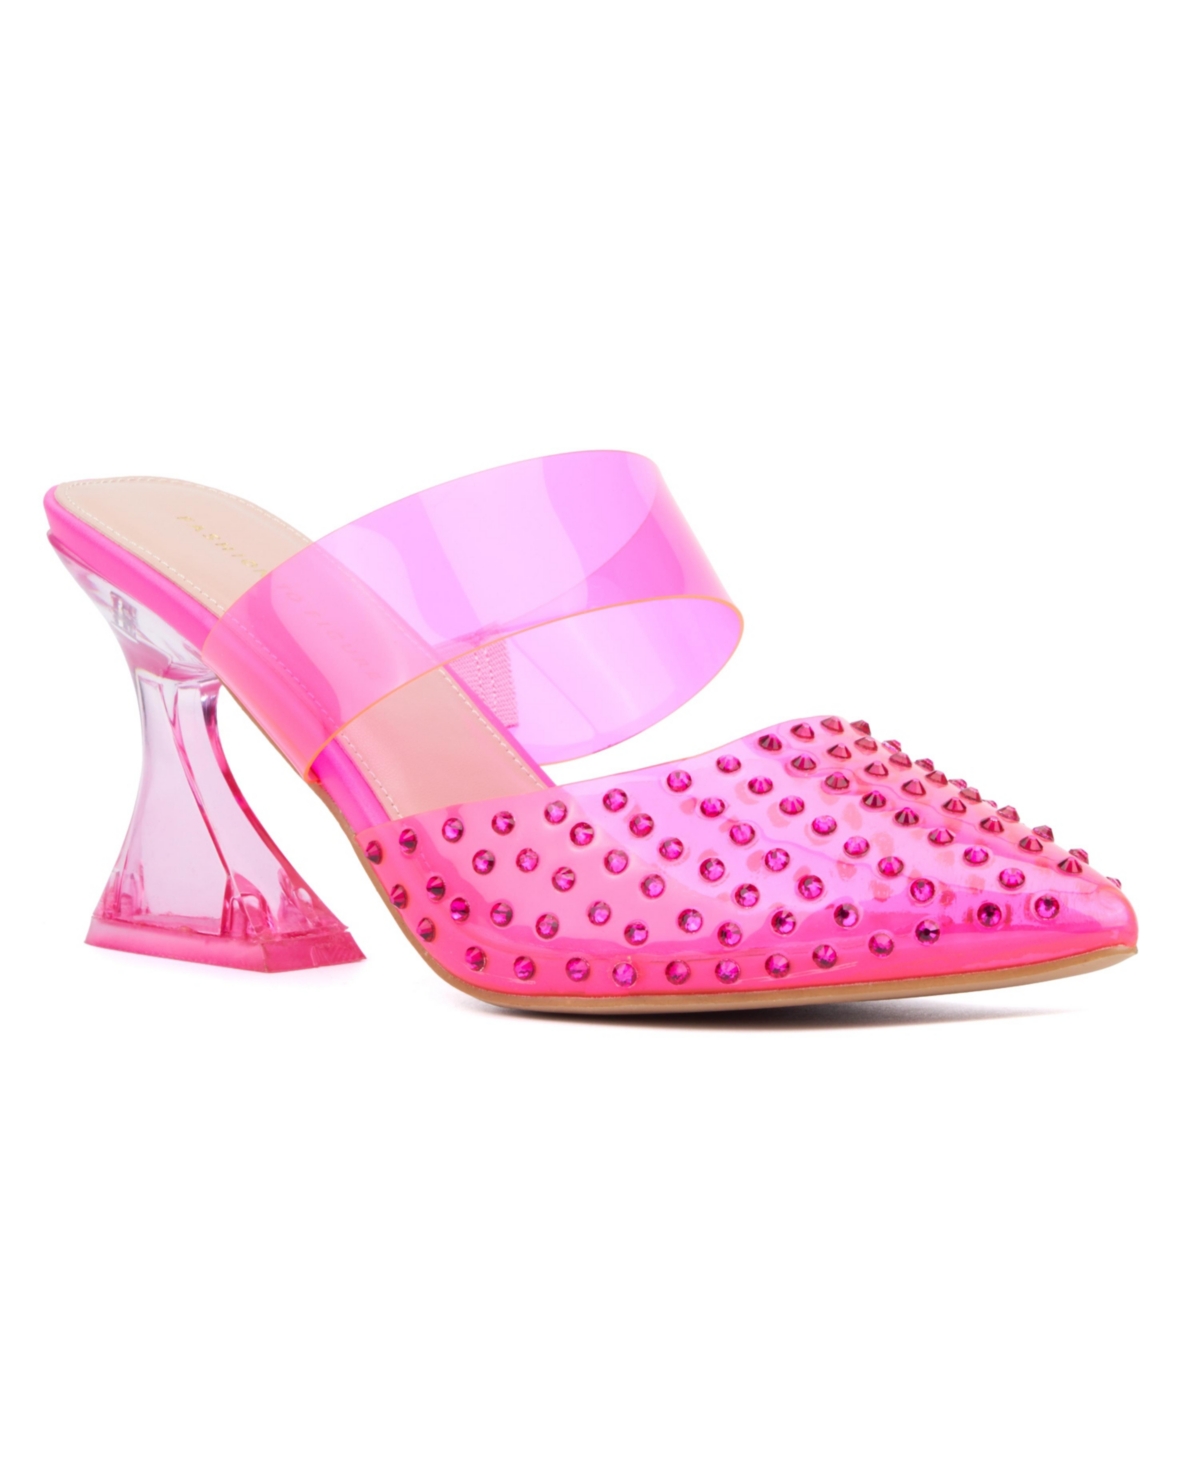 Women's Jazz Heel Pump - Wide Width - Neon pink